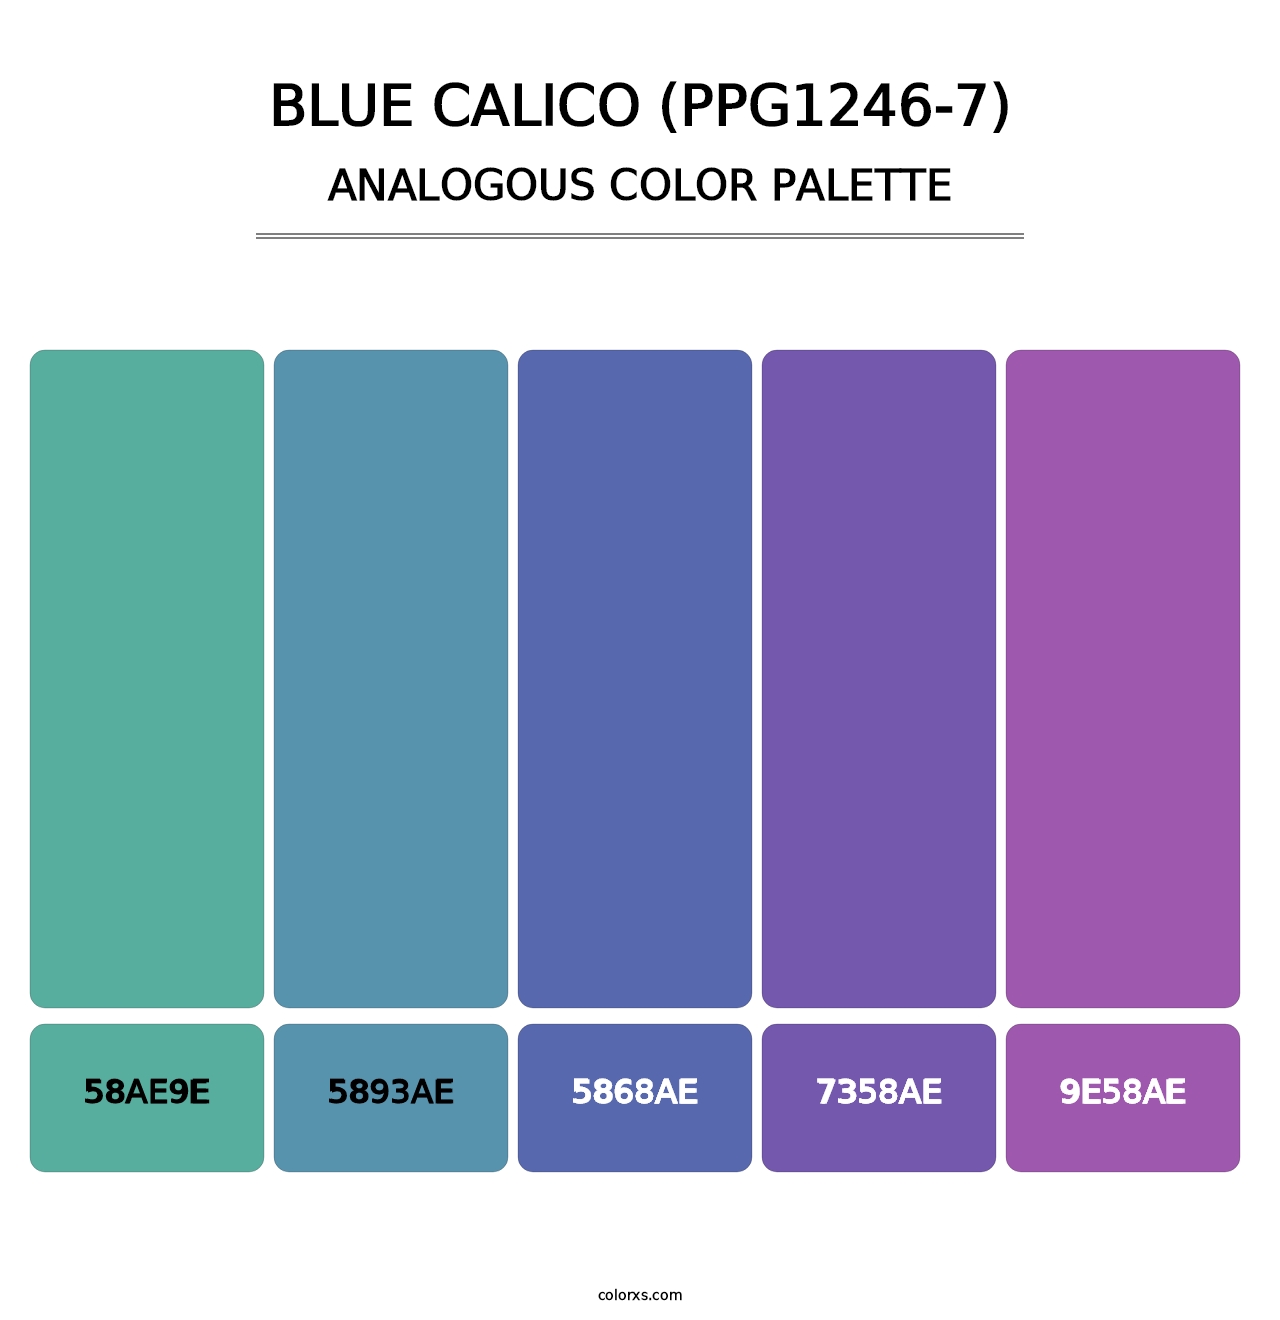 Blue Calico (PPG1246-7) - Analogous Color Palette